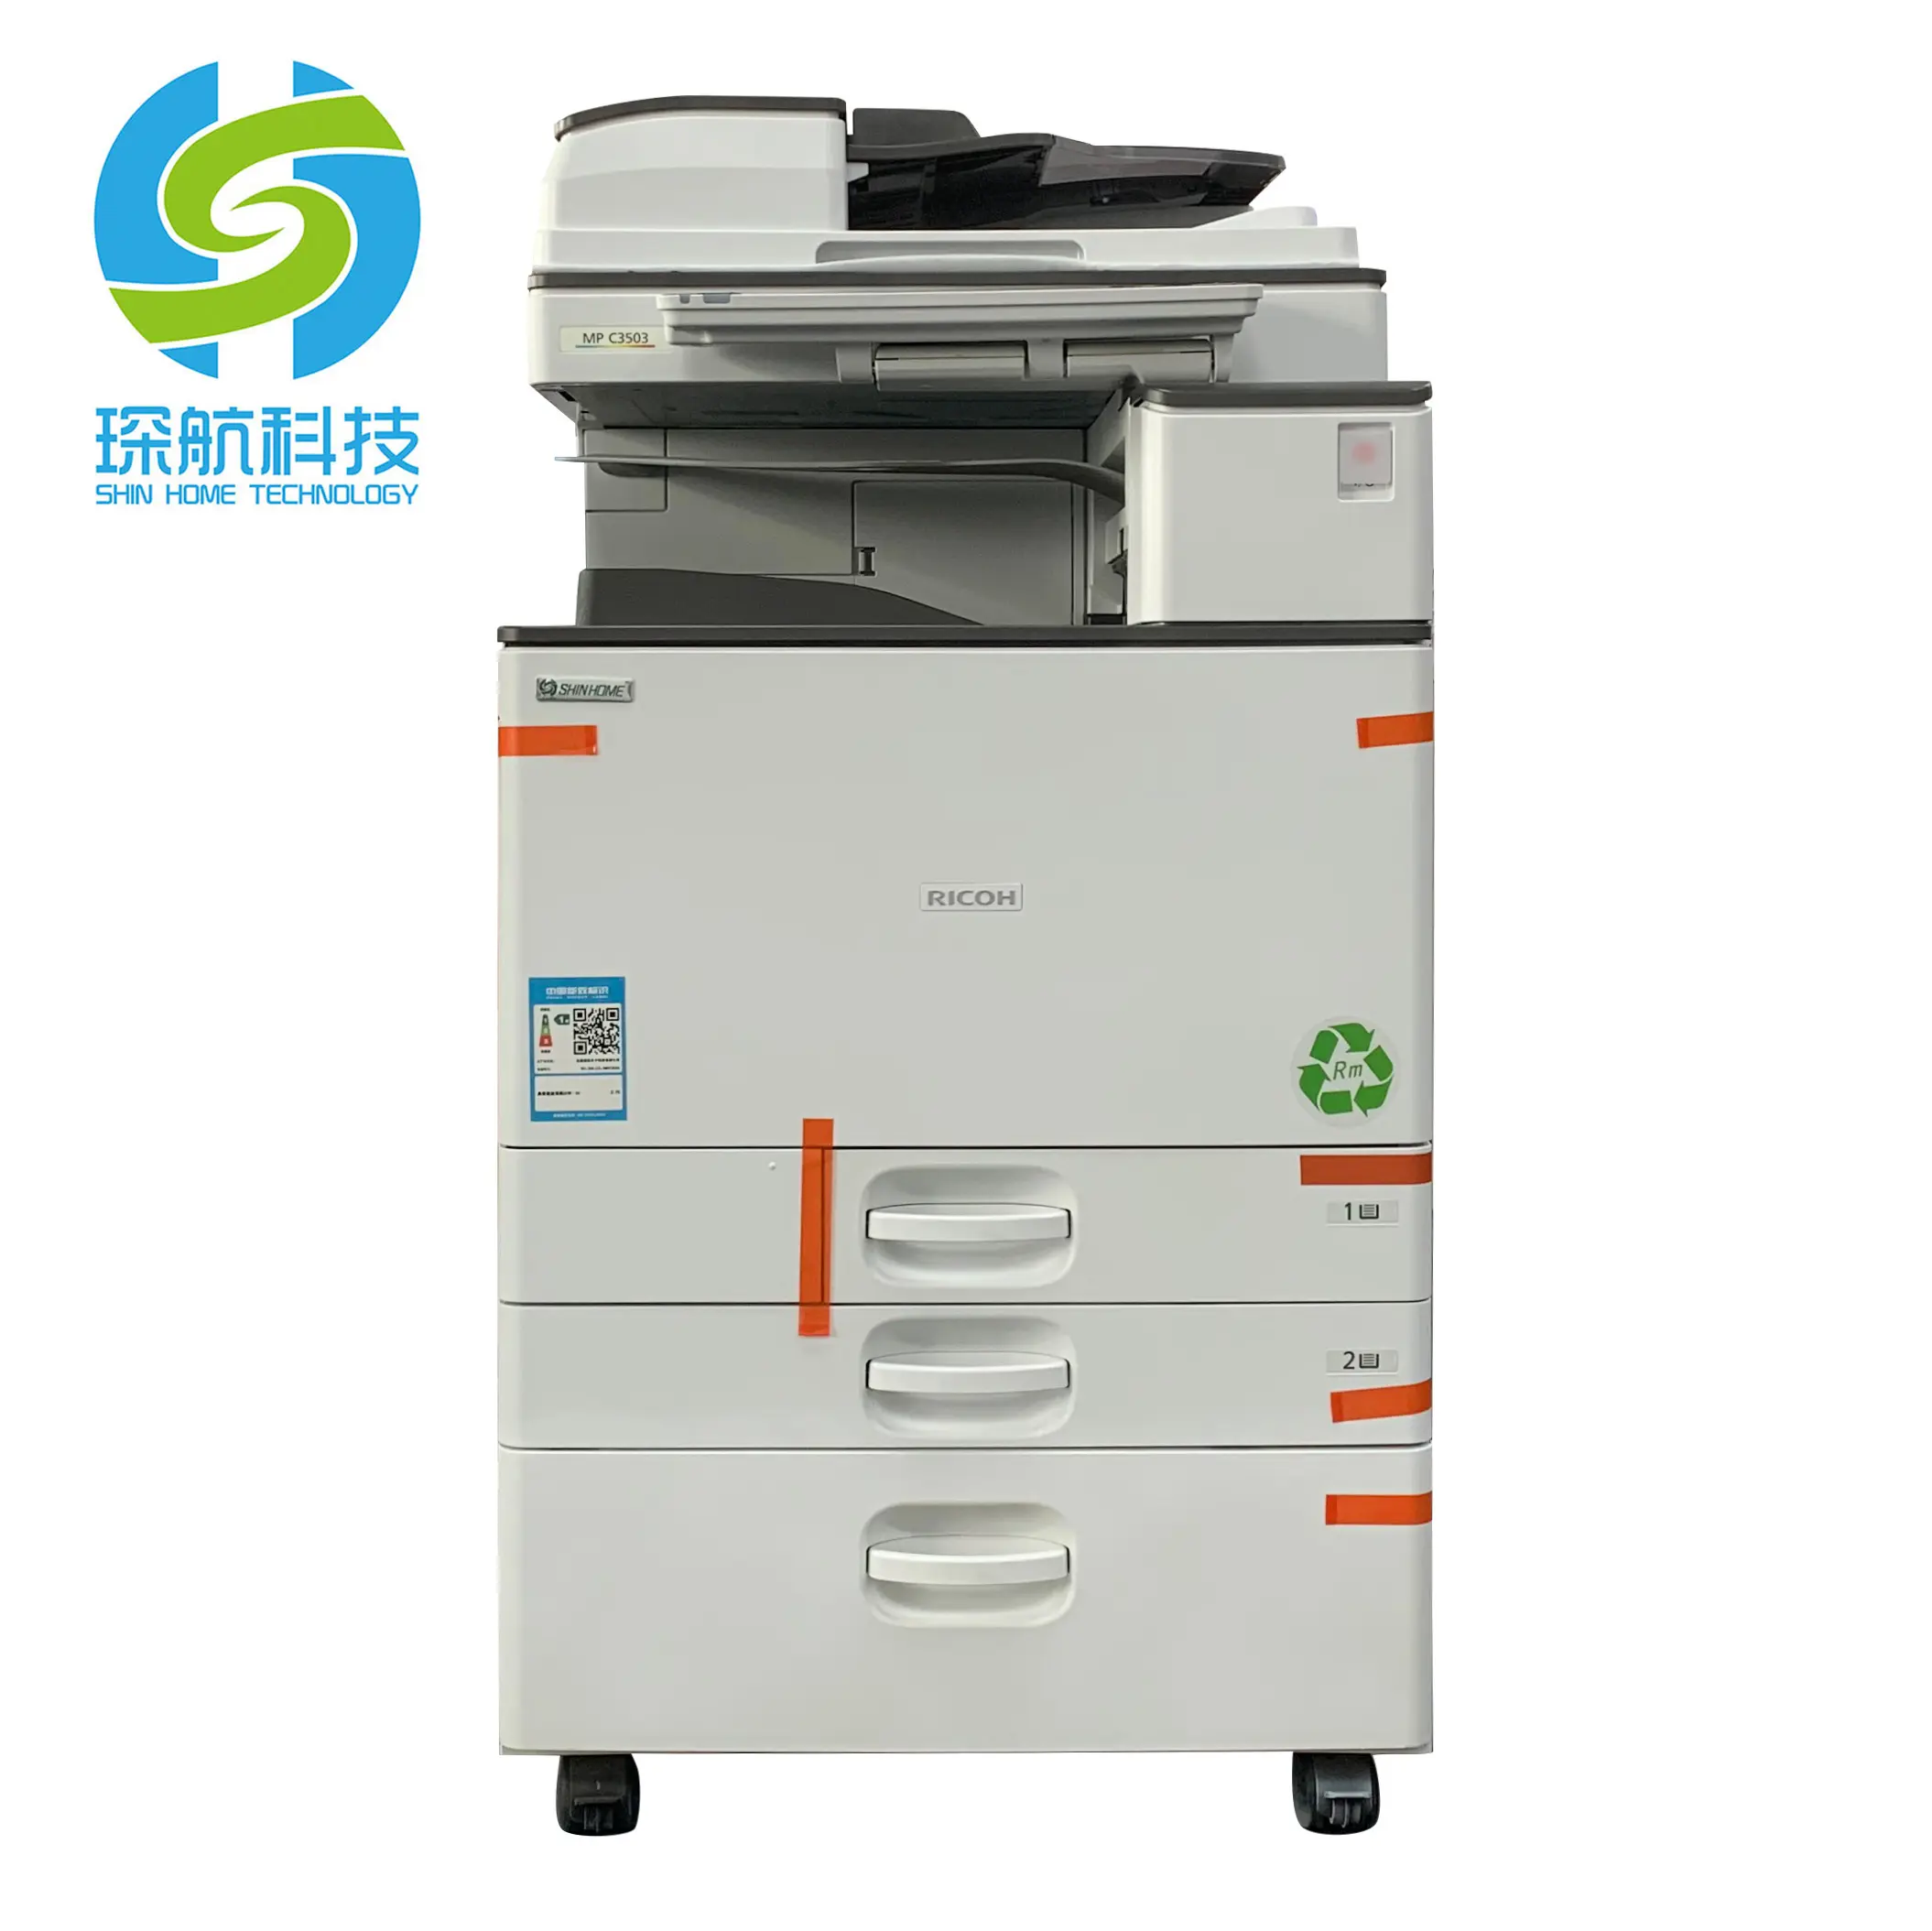 A3 impressora digital multifuncional, máquina copiadora fotocópia para máquina fotocopiadora usado ricoh mpc3503sp